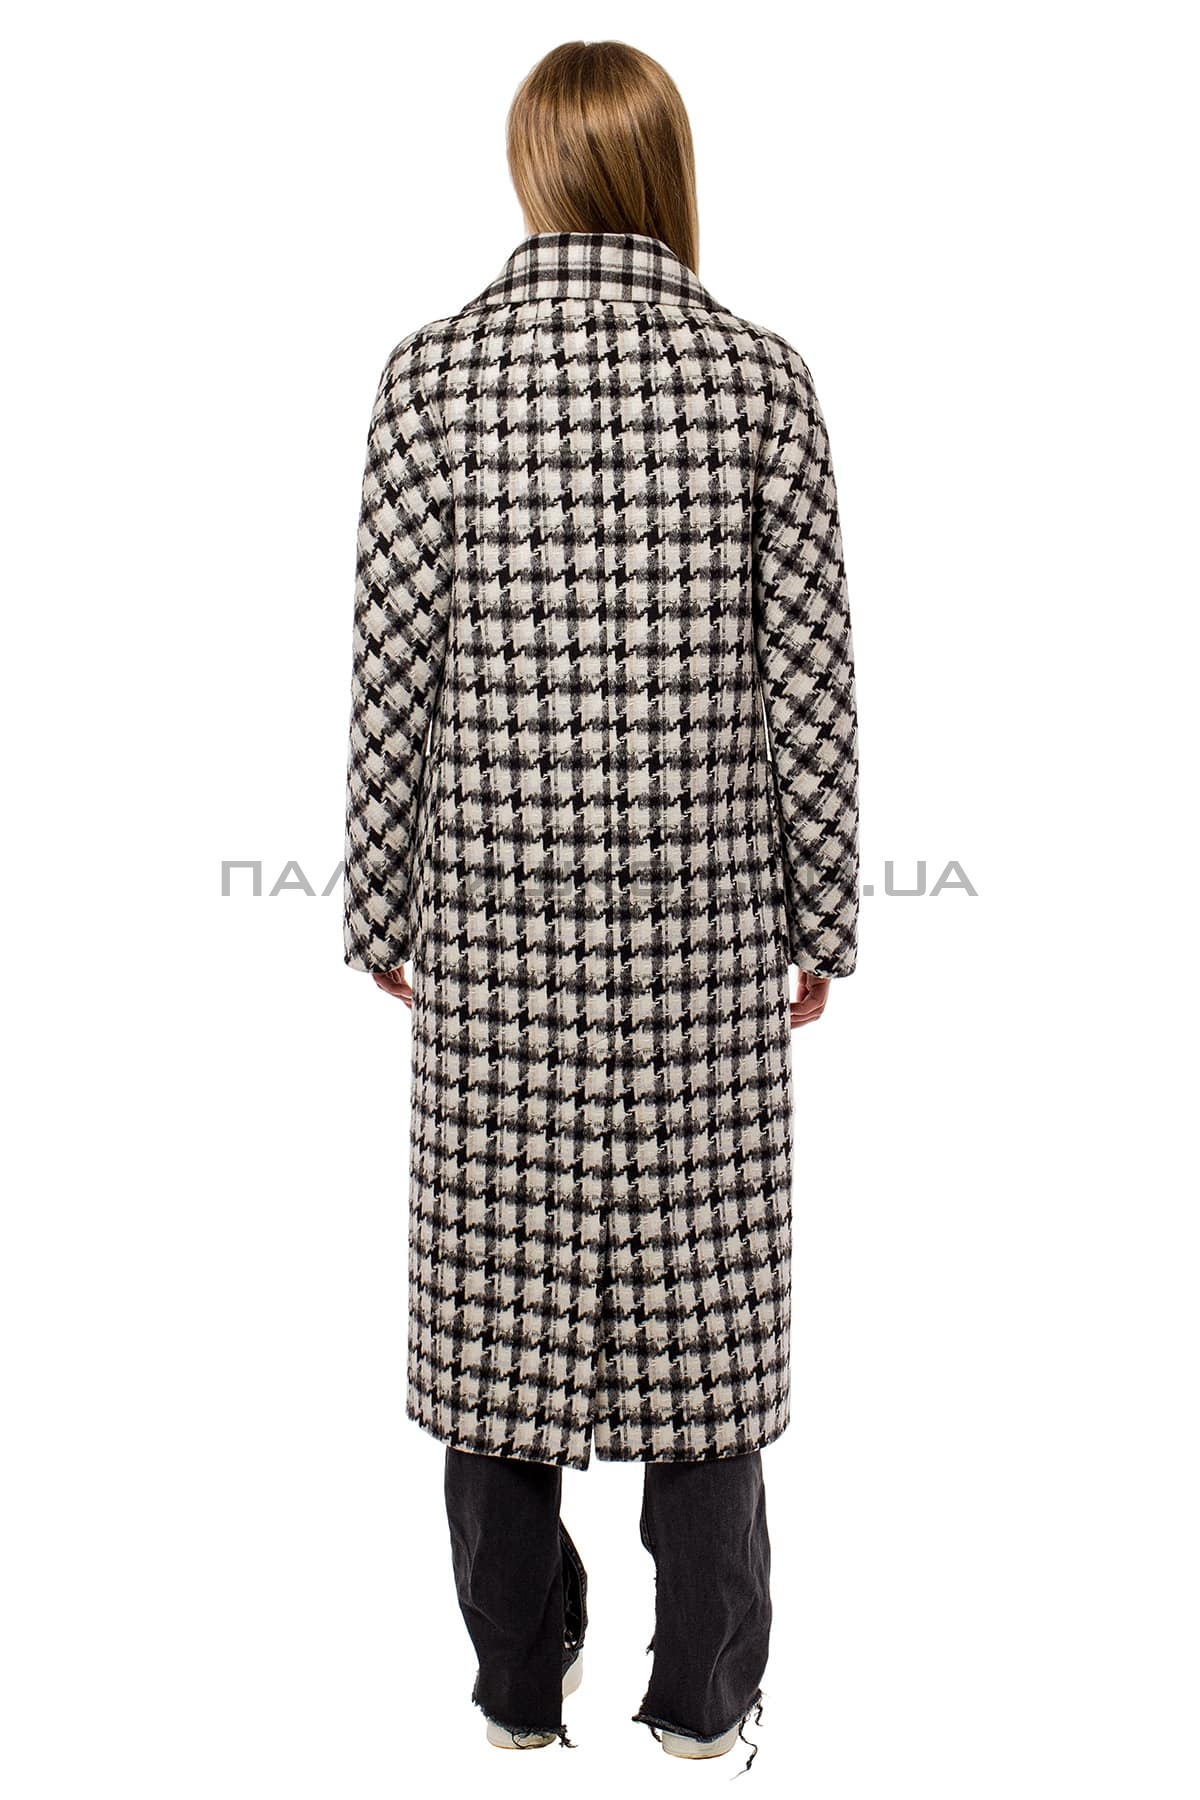  Женское стильное пальто гусиная лапка черно-белое